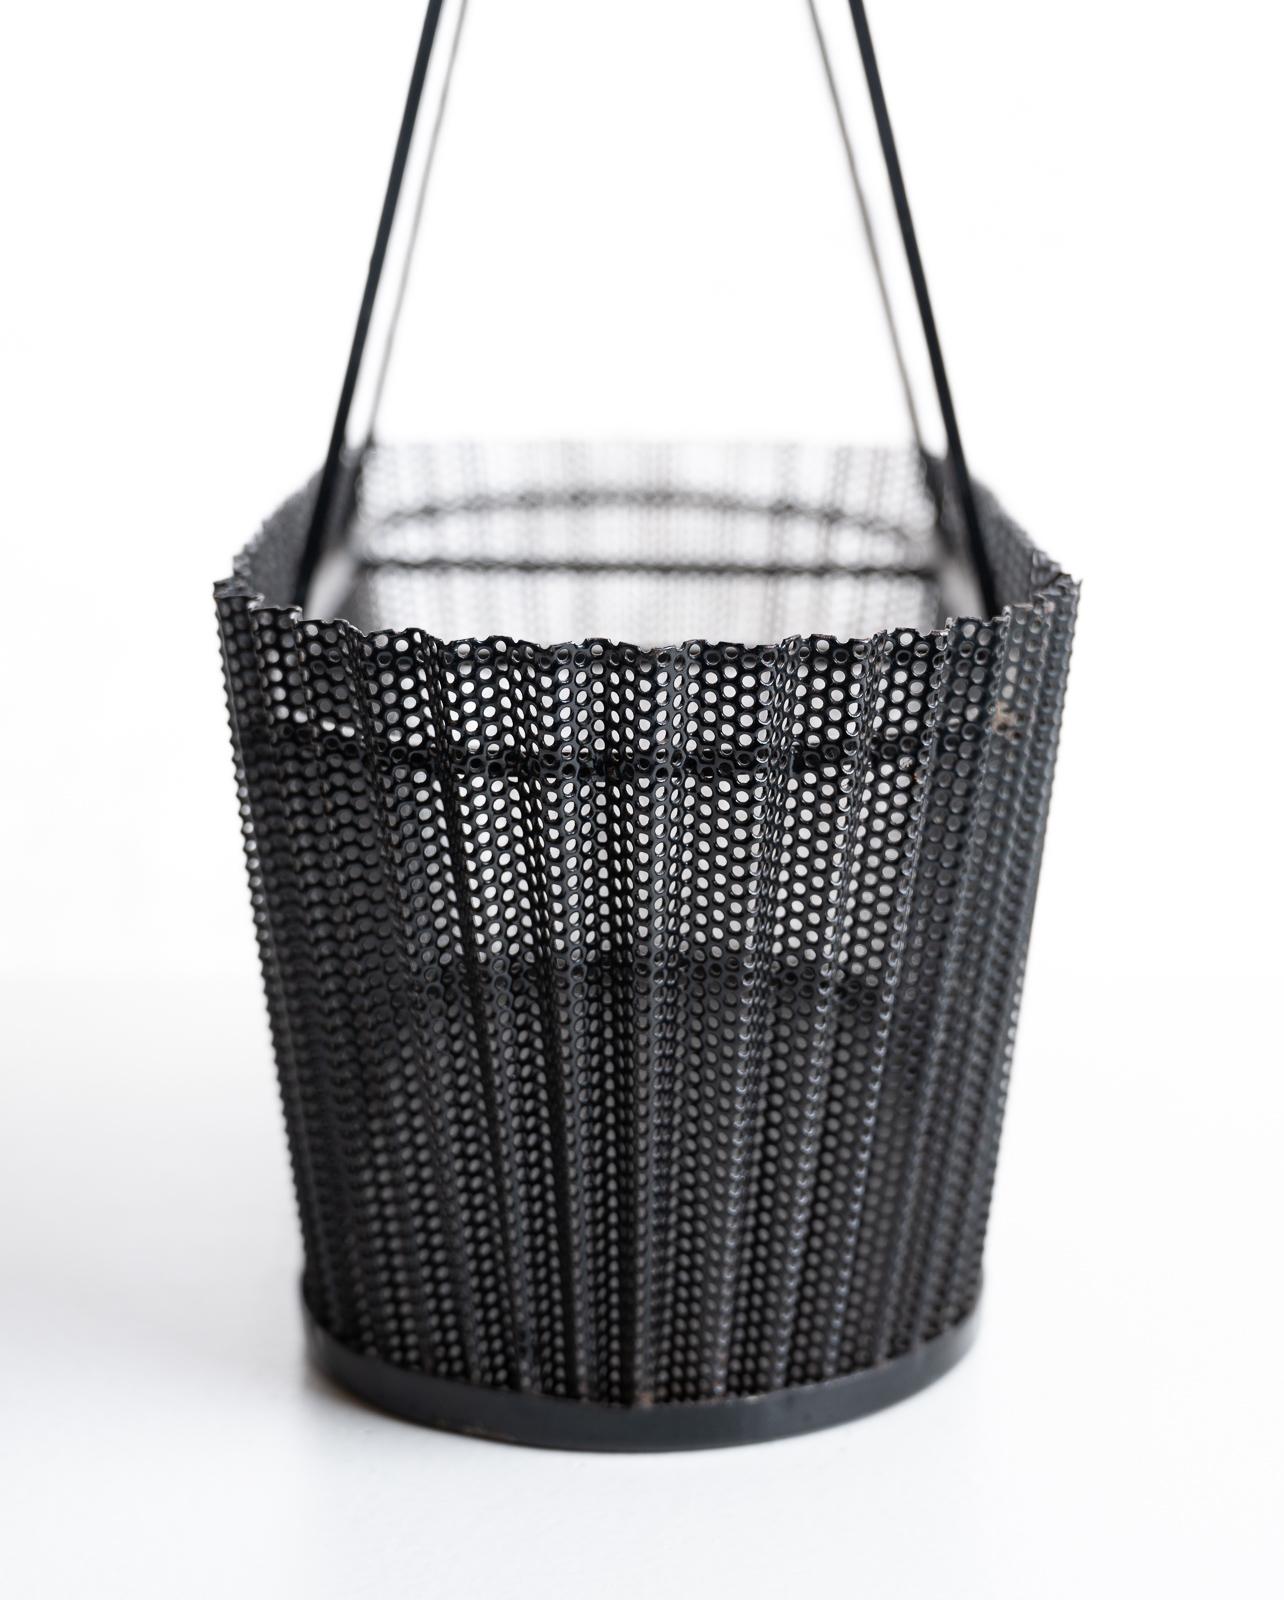 Rare Metal Basket with Wicker Handles by Mathieu Matégot 7